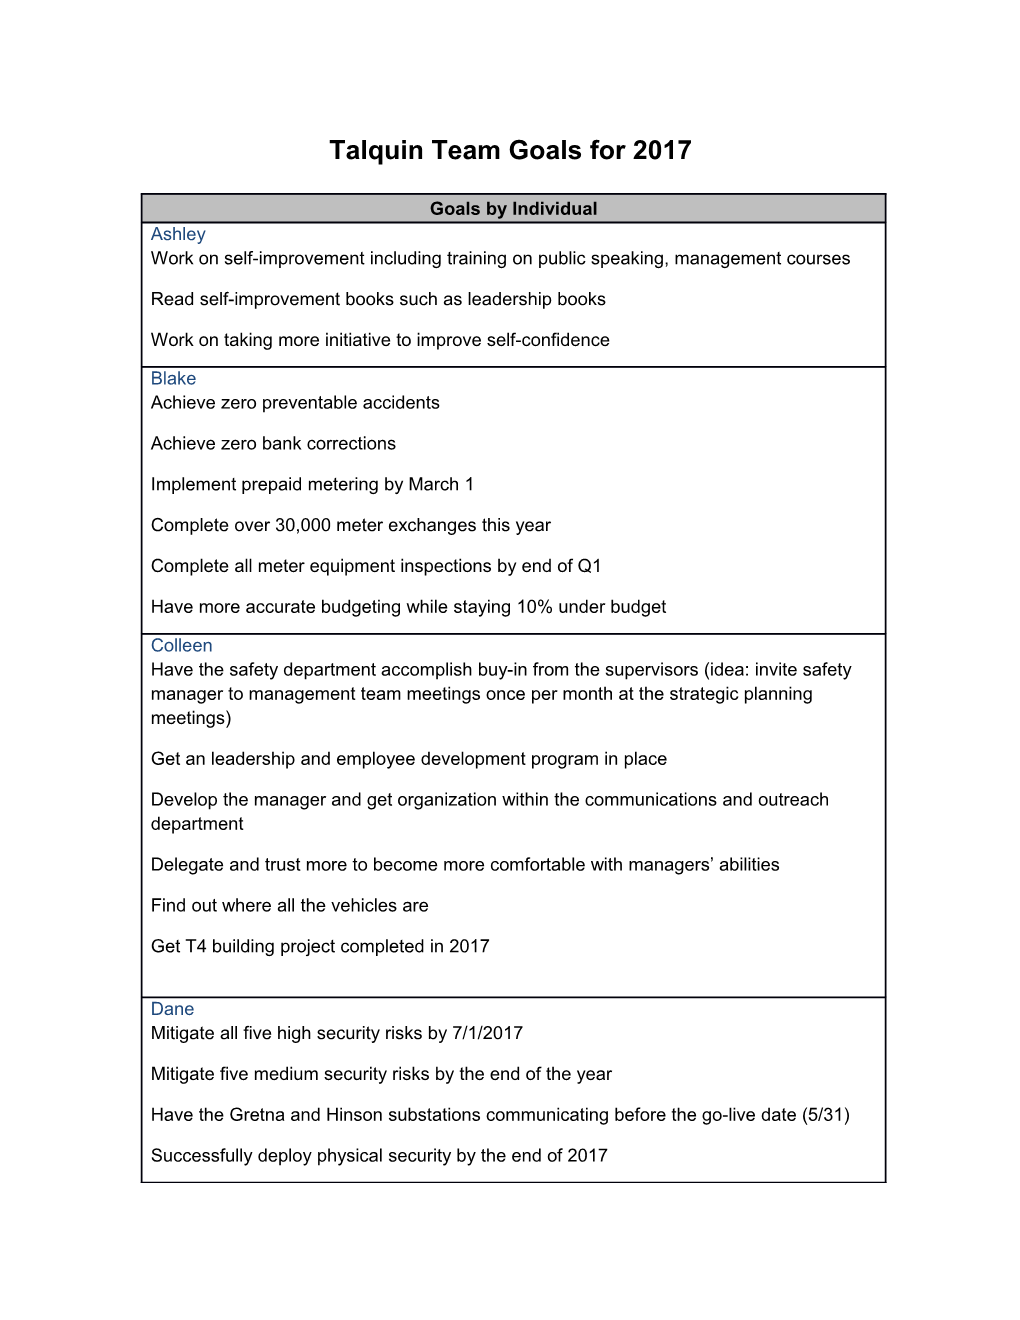 Talquin Team Goals for 2017